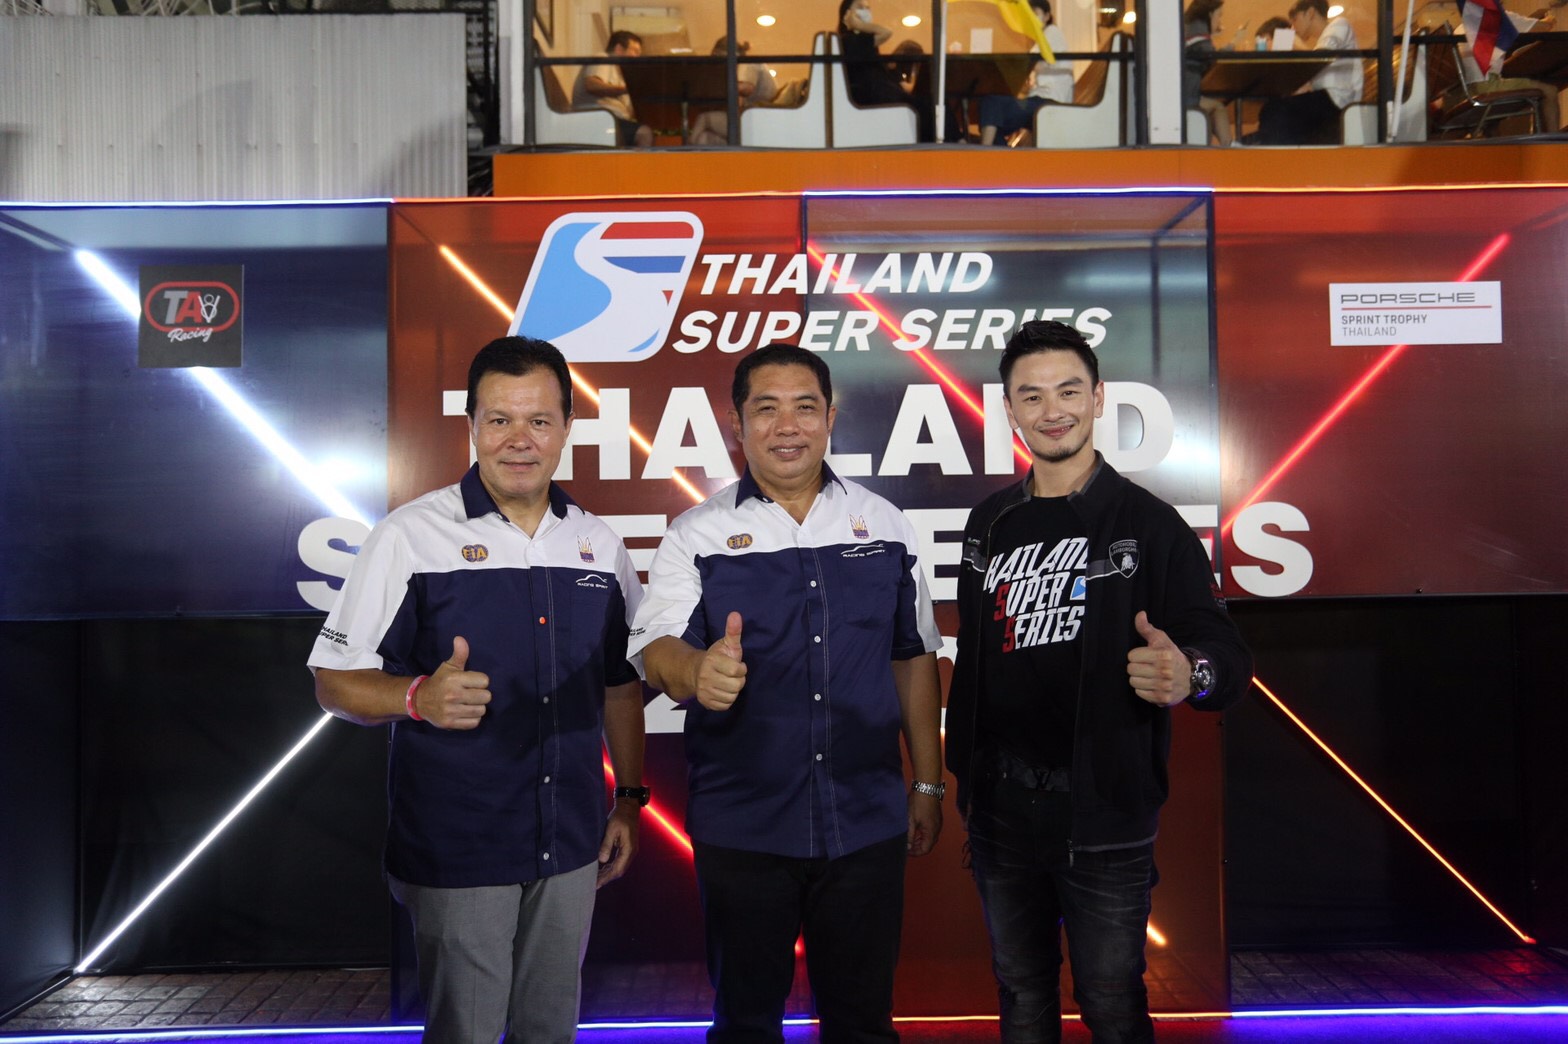 Thailand Super Series เปิดตัวศึก 2020 ยิ่งใหญ่ ครั้งแรก ของมอเตอร์สปอร์ตไทย ก้าวสู่ Support Race การแข่งขัน Formula 1 พร้อมเตรียมตัวในฐานะ เจ้าบ้าน